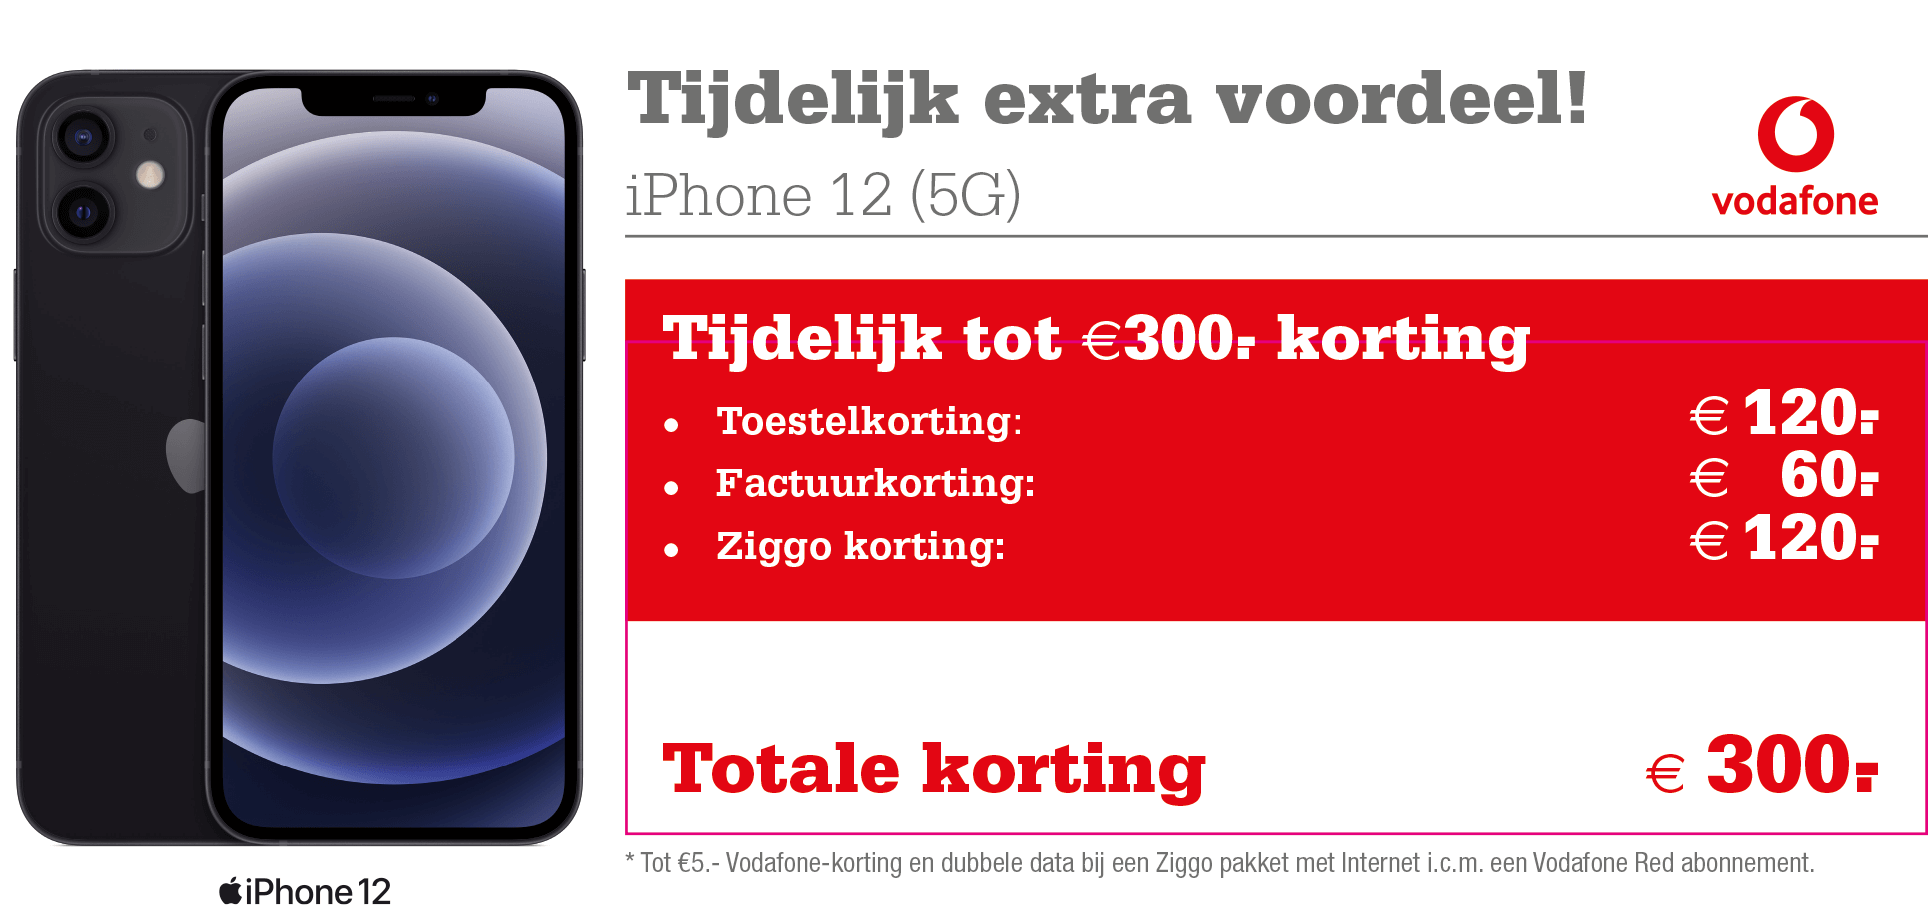 Picasso Ook Vervolg Vodafone Unlimited aanbieding: tot €300,- korting op de iPhone 12! |  Telecombinatie